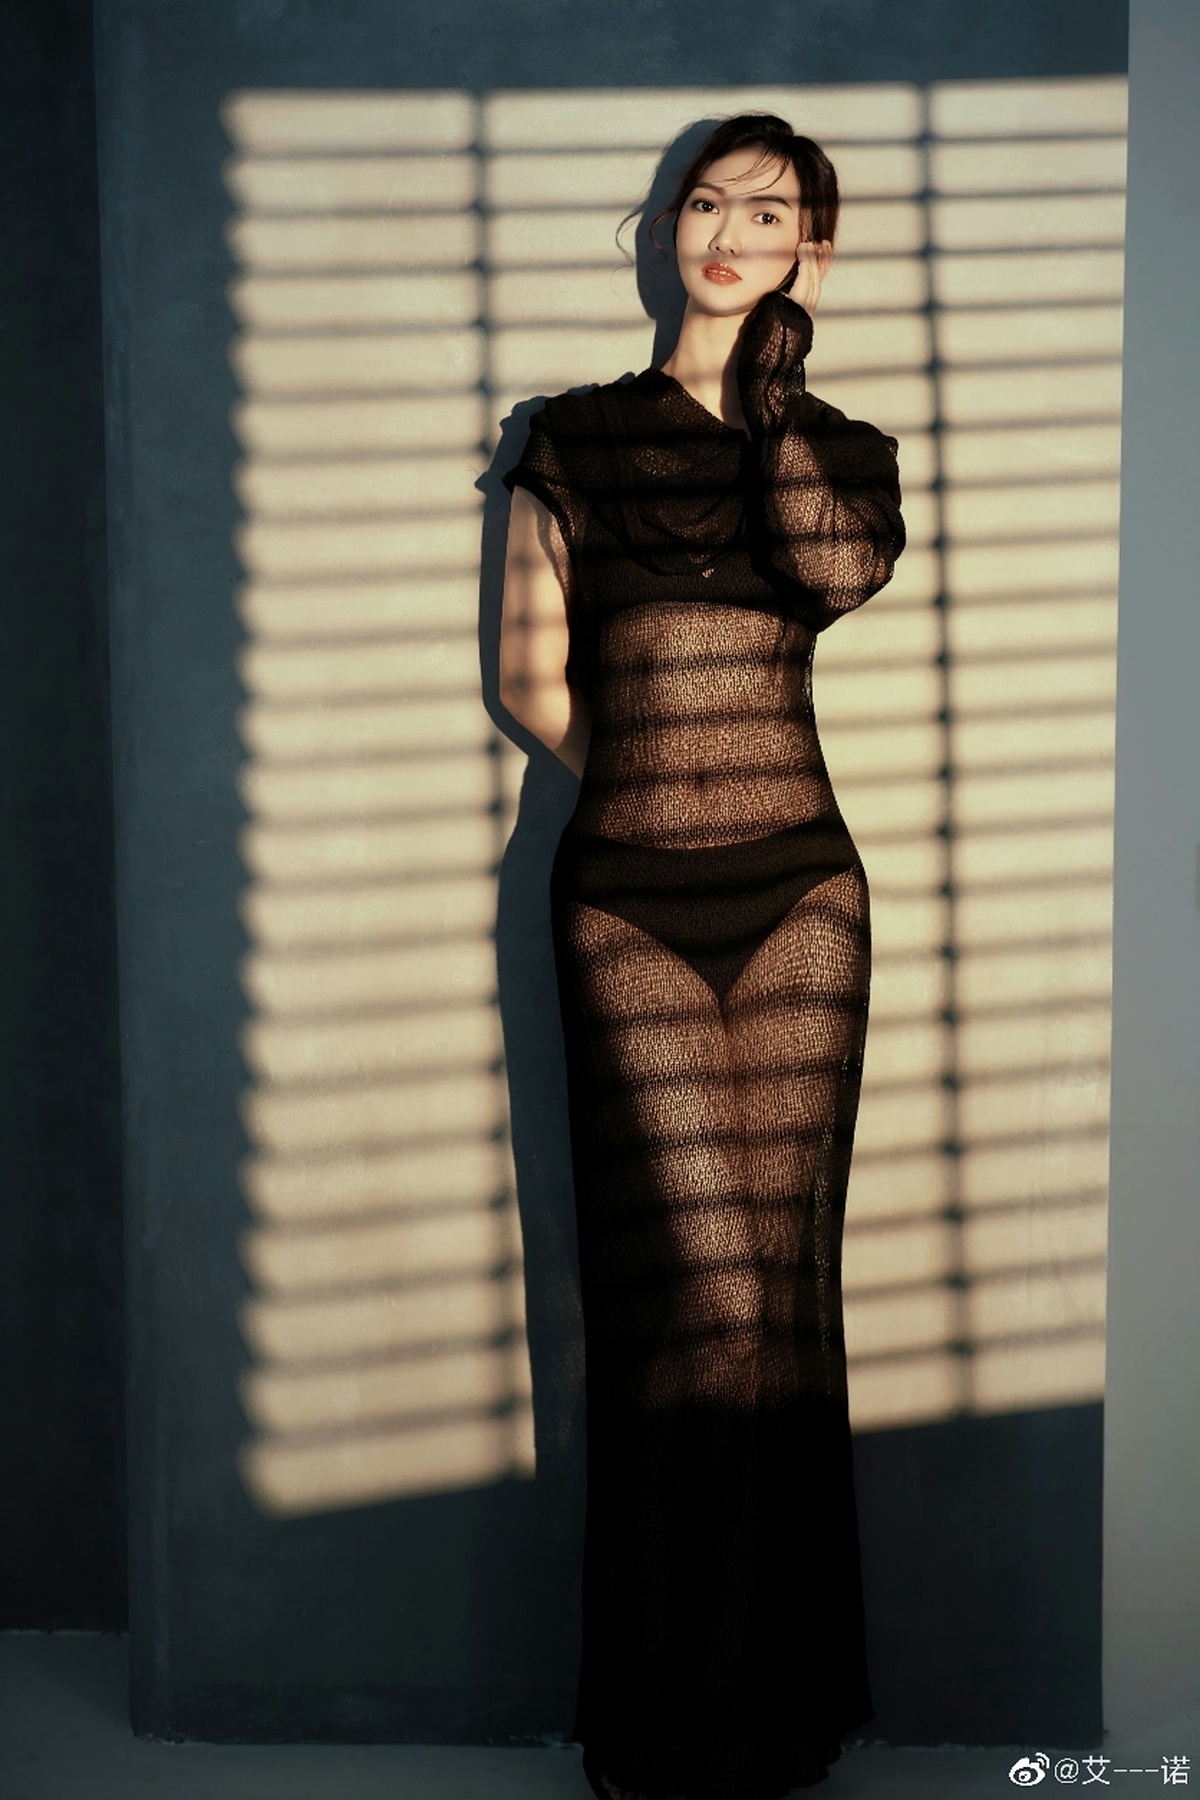 一位穿着黑色连衣裙的女人站在窗前 墙上有些阴影。